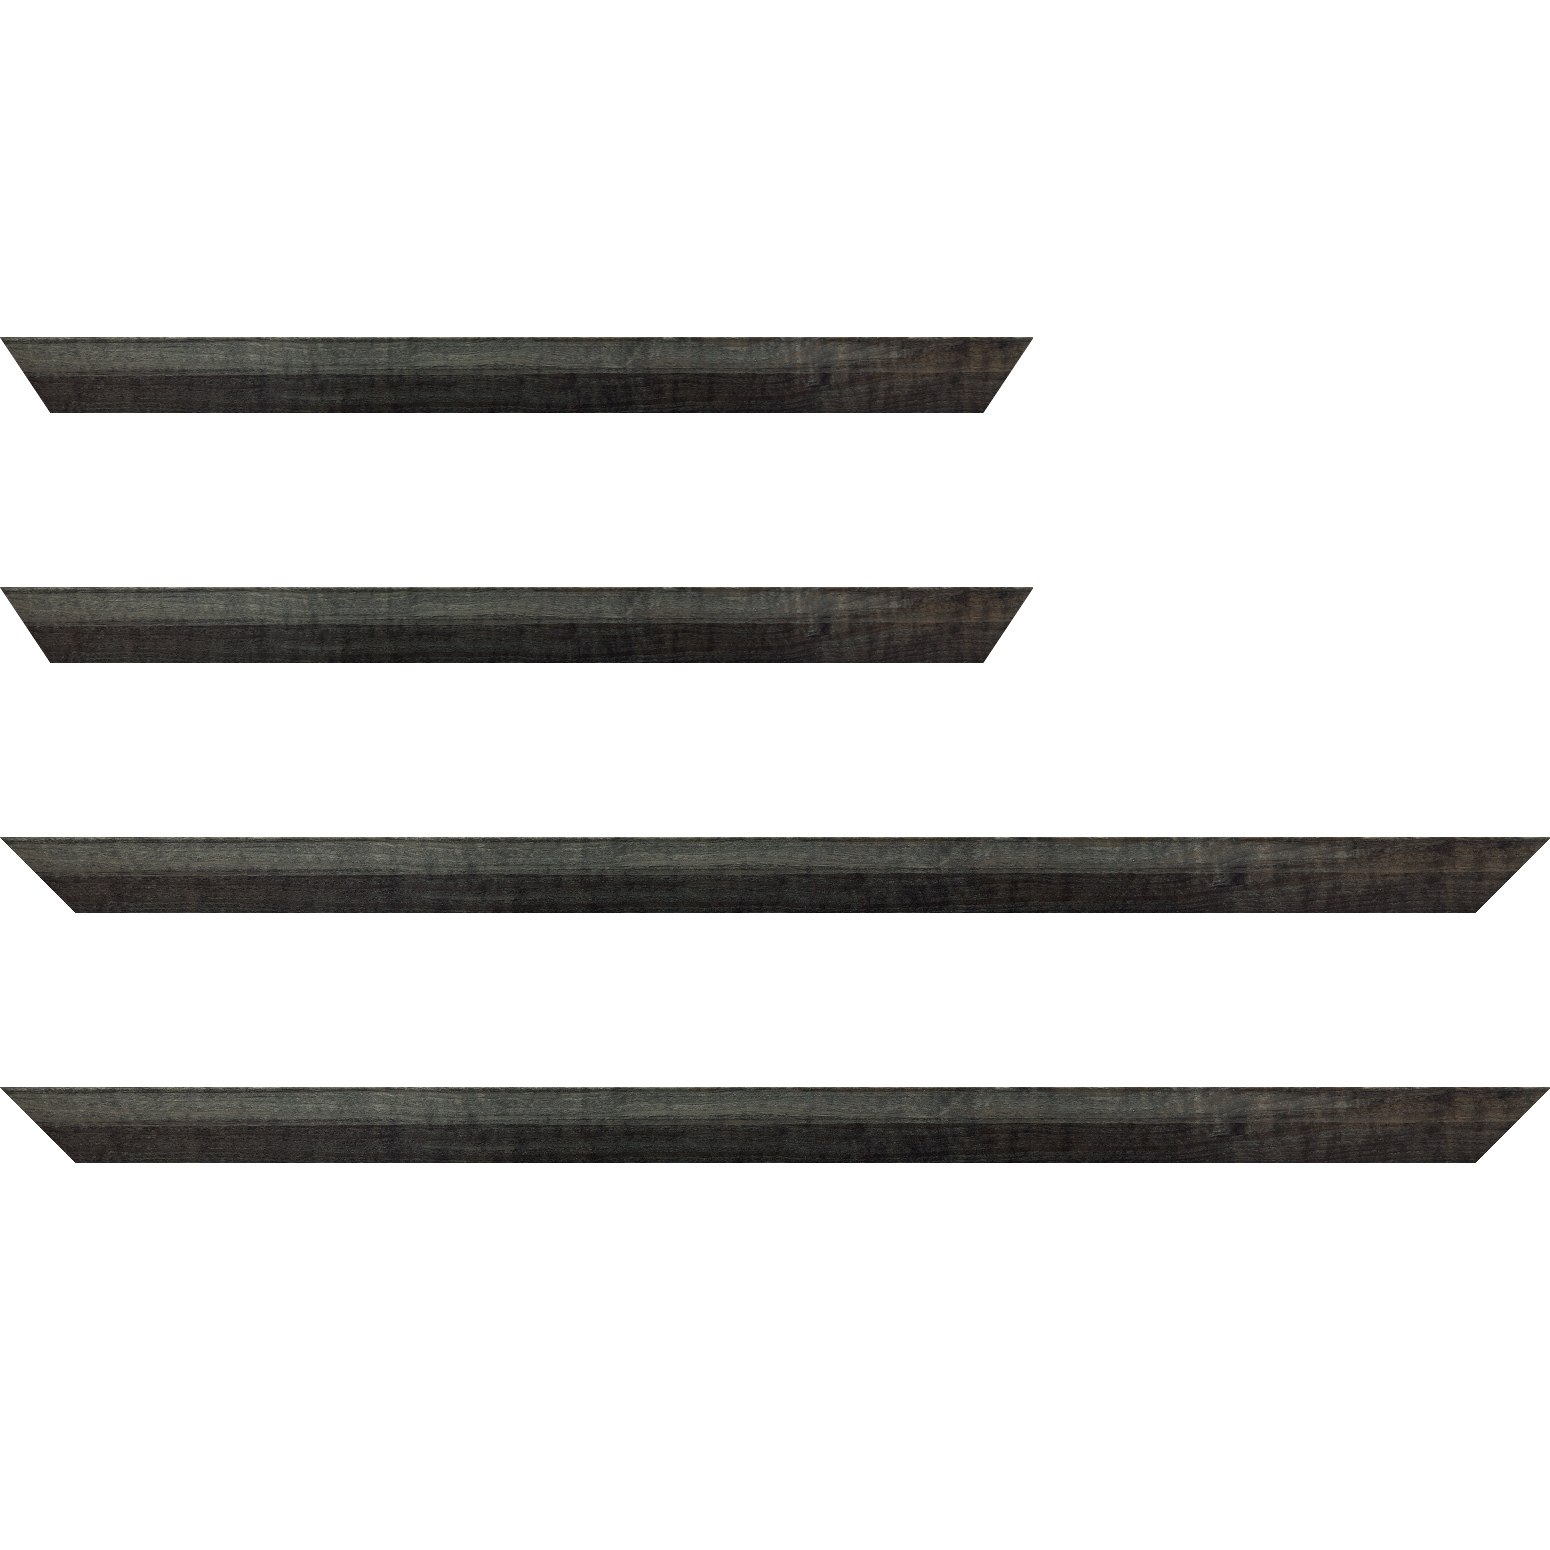 Baguette bois profil arrondi en pente plongeant largeur 2.4cm couleur  gris foncé anthracite finition vernis brillant,veine du bois  apparent (pin) ,